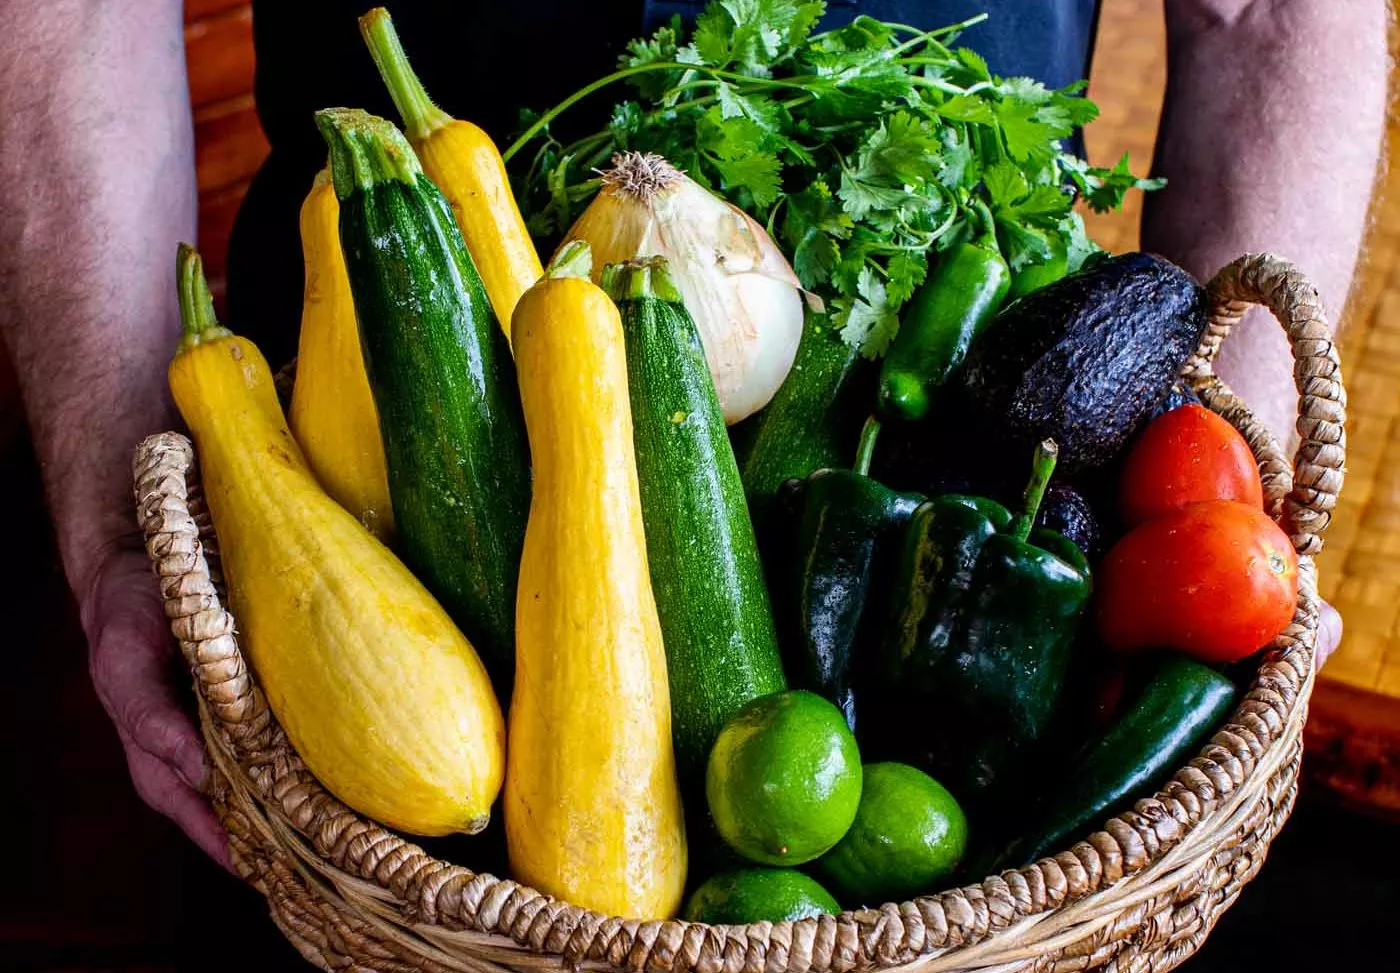 Basket of colorful vegetables.